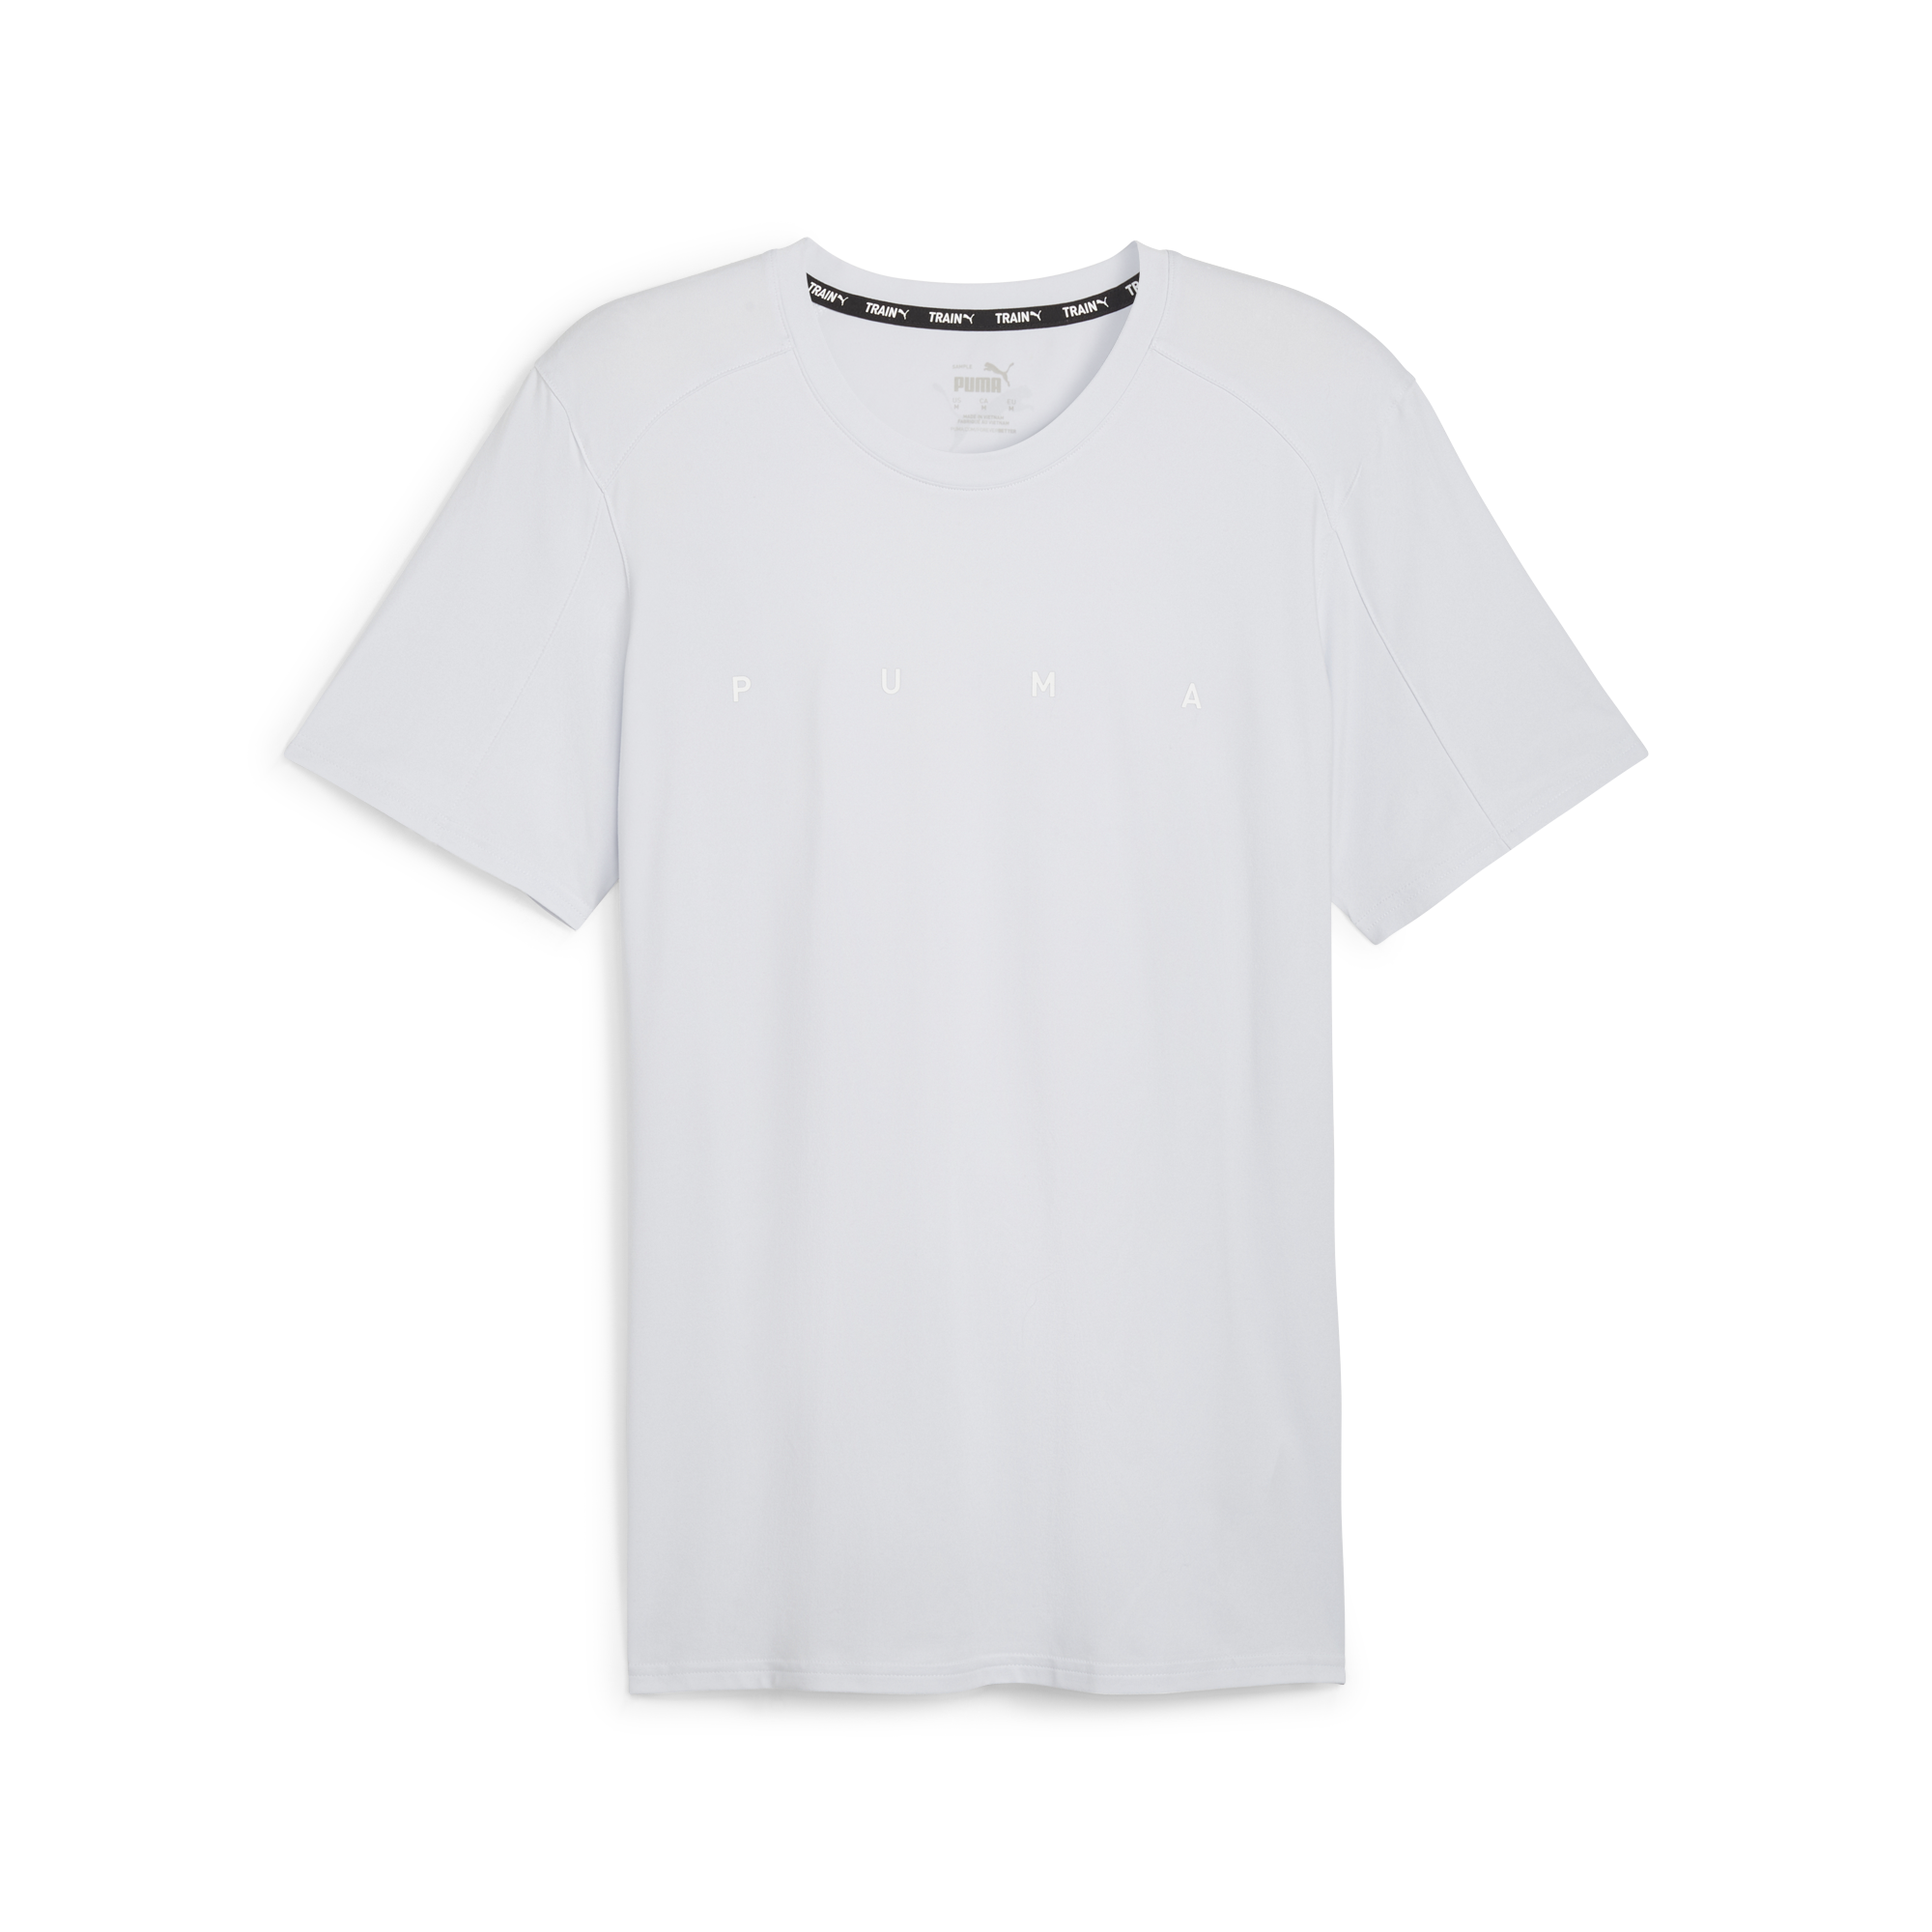 Men CloudSpun Engineerd for Strength Short Sleeve T-Shirt